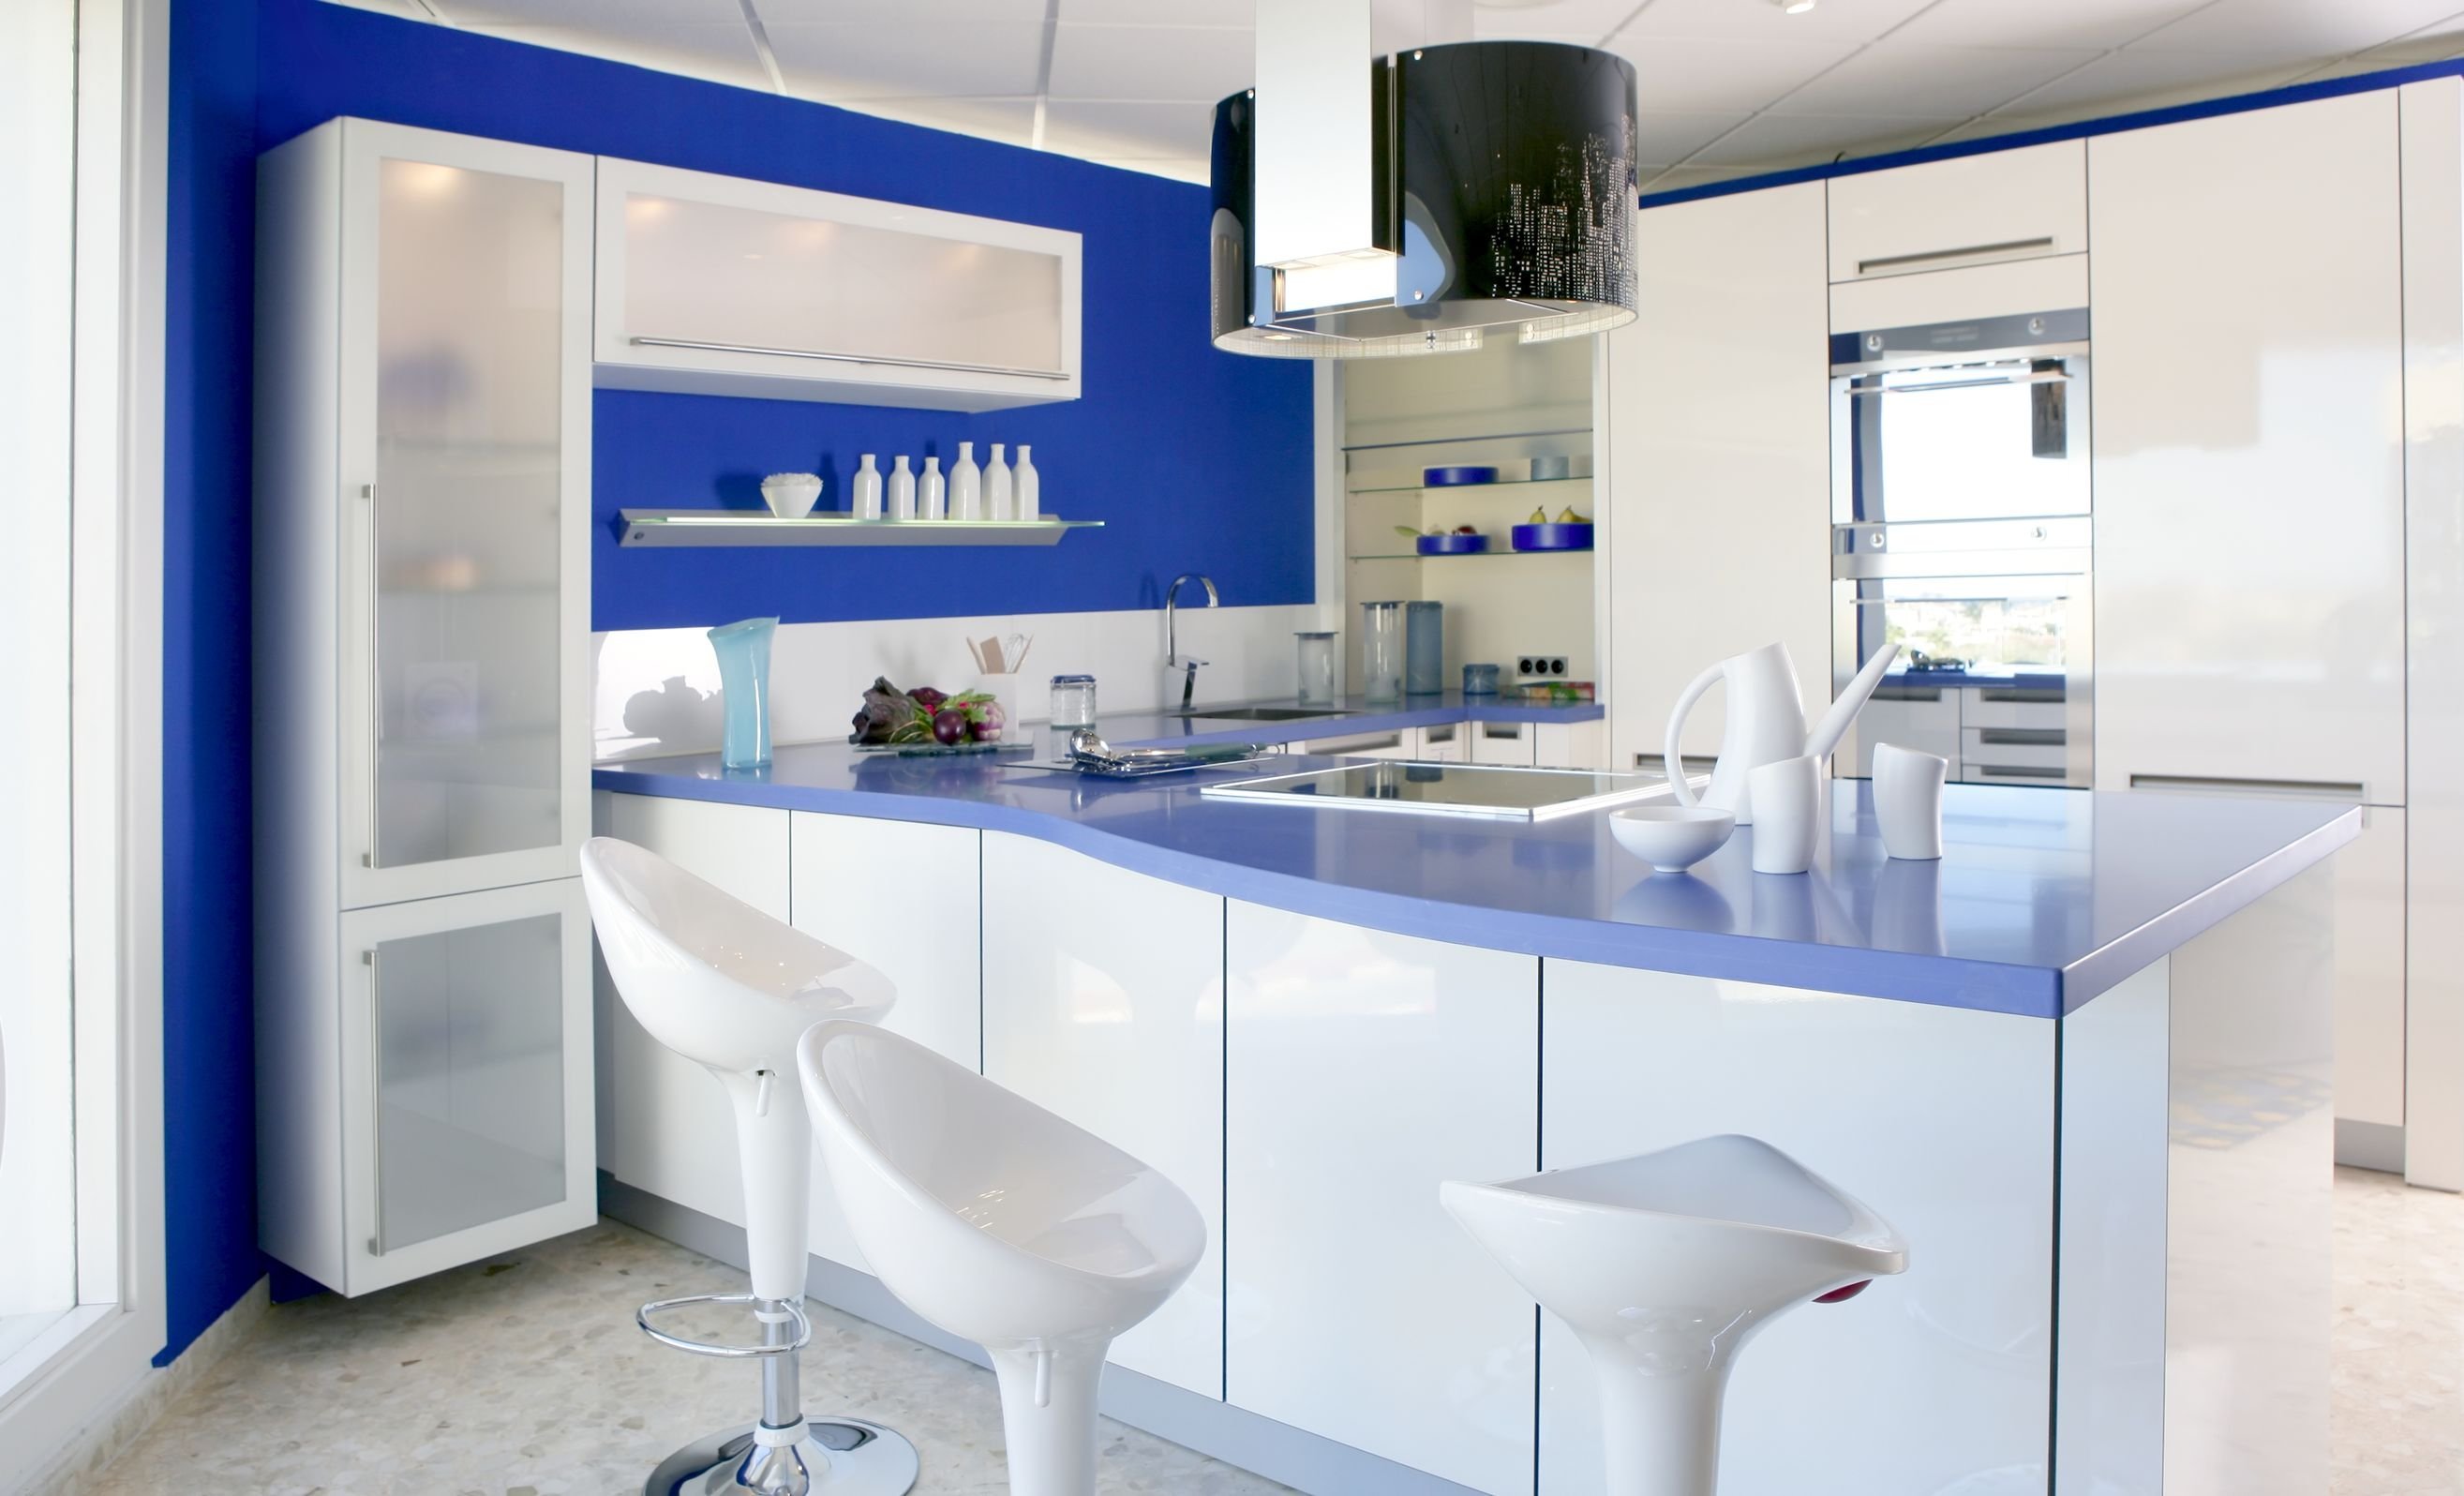 Белая кухня синяя столешница. Кухня в синих тонах. Кухня в синем цвете. Бело синяя кухня. Синиме кухни.